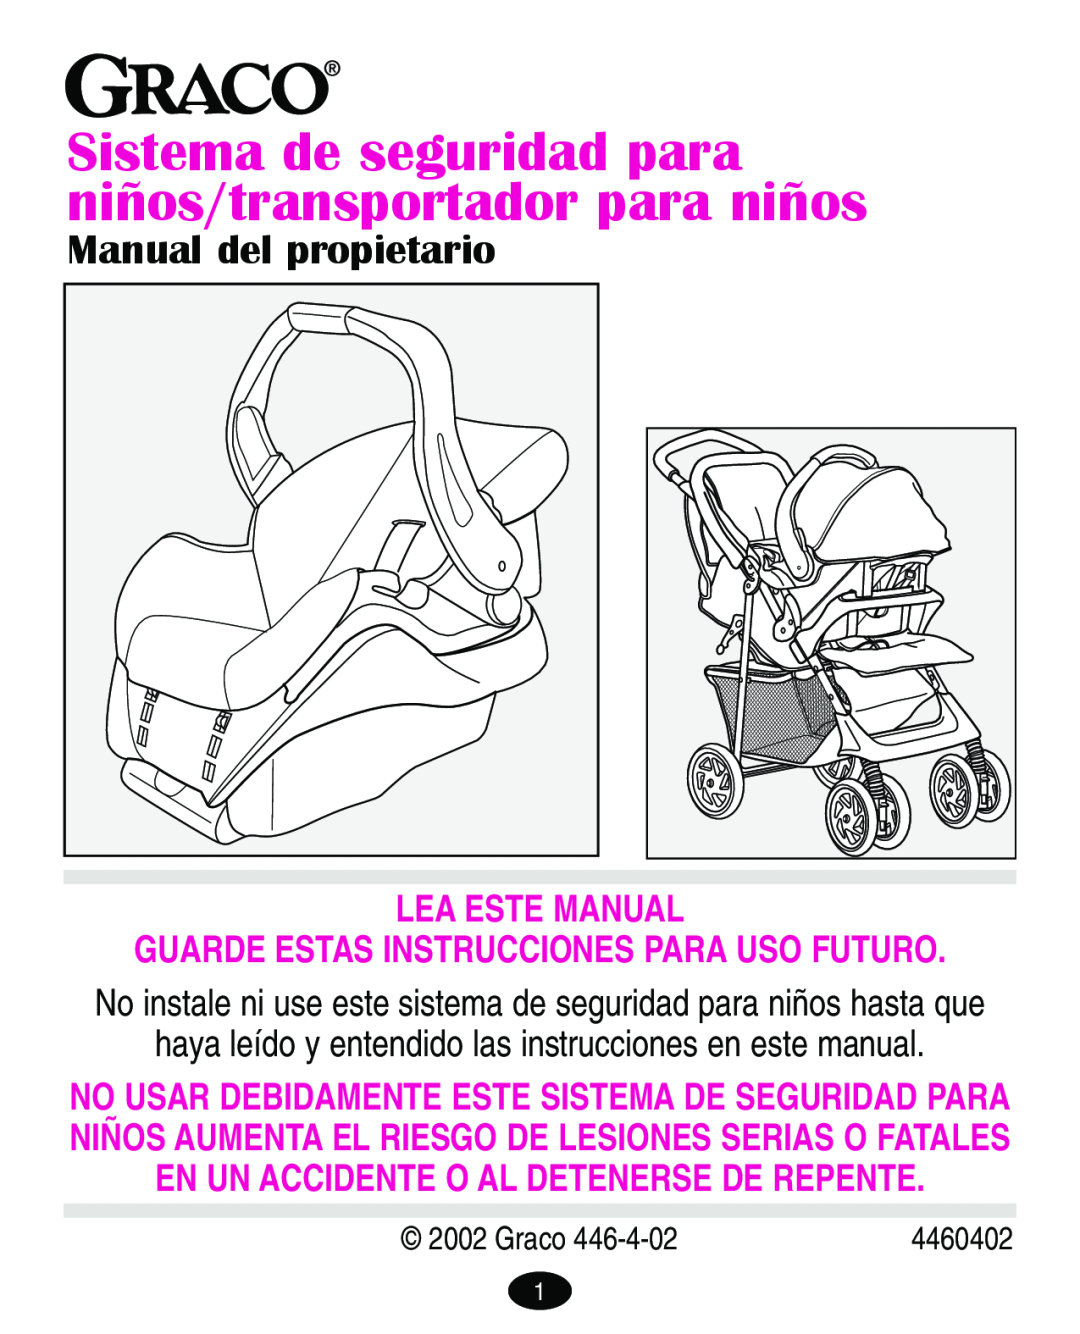 Graco 4460402 Manual del propietario, Lea Este Manual, Sistema de seguridad para niños/transportador para niños, Graco 